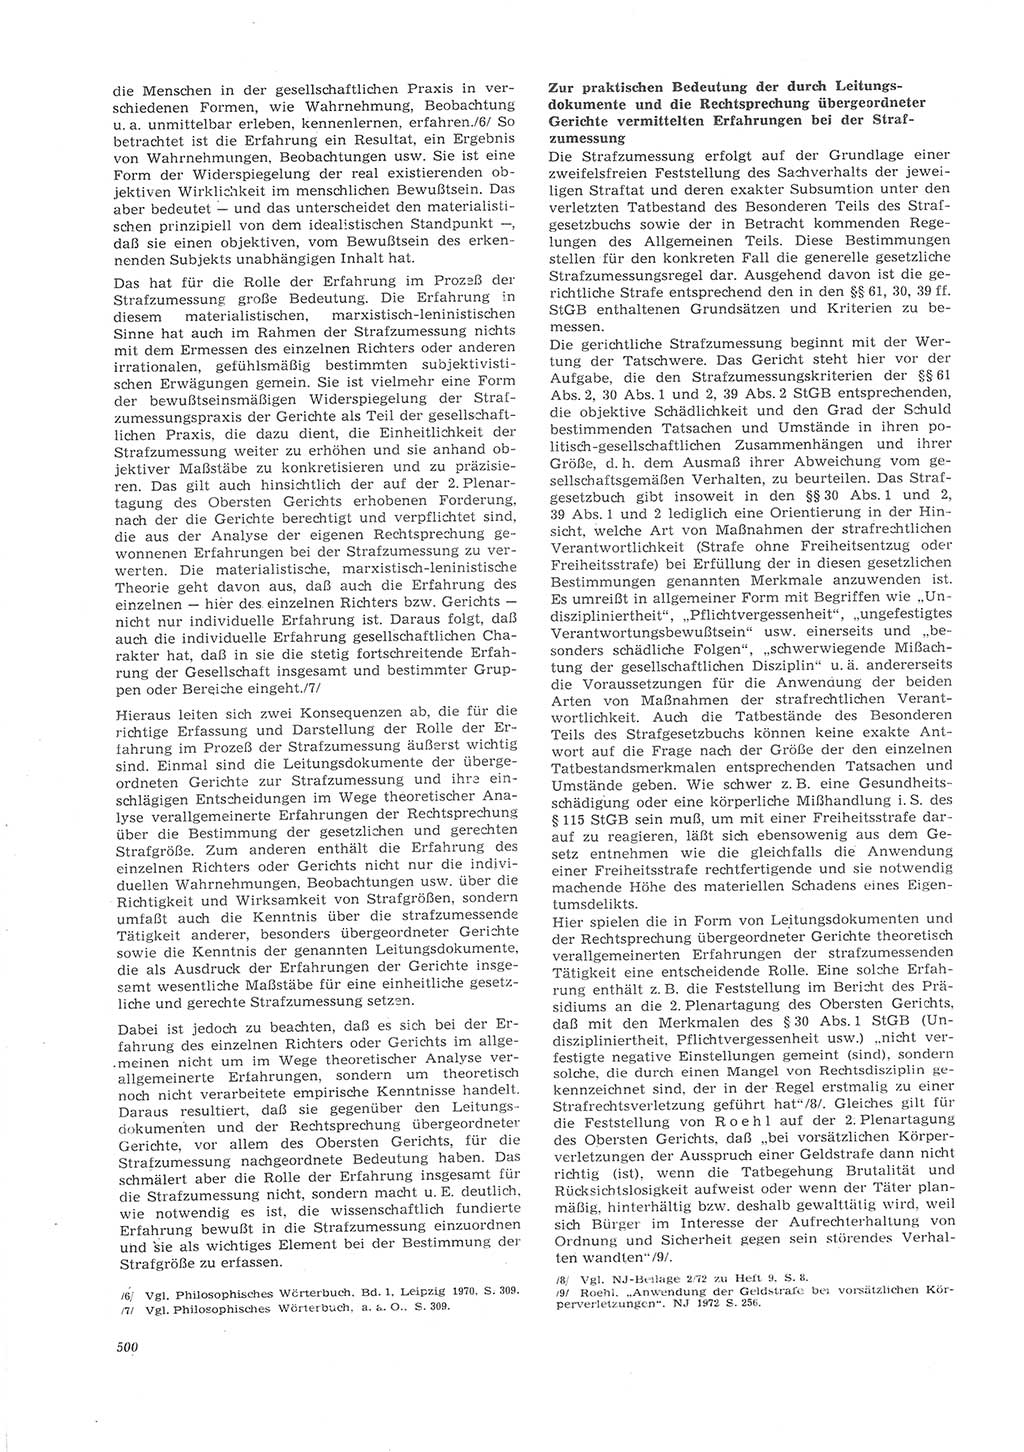 Neue Justiz (NJ), Zeitschrift für Recht und Rechtswissenschaft [Deutsche Demokratische Republik (DDR)], 26. Jahrgang 1972, Seite 500 (NJ DDR 1972, S. 500)